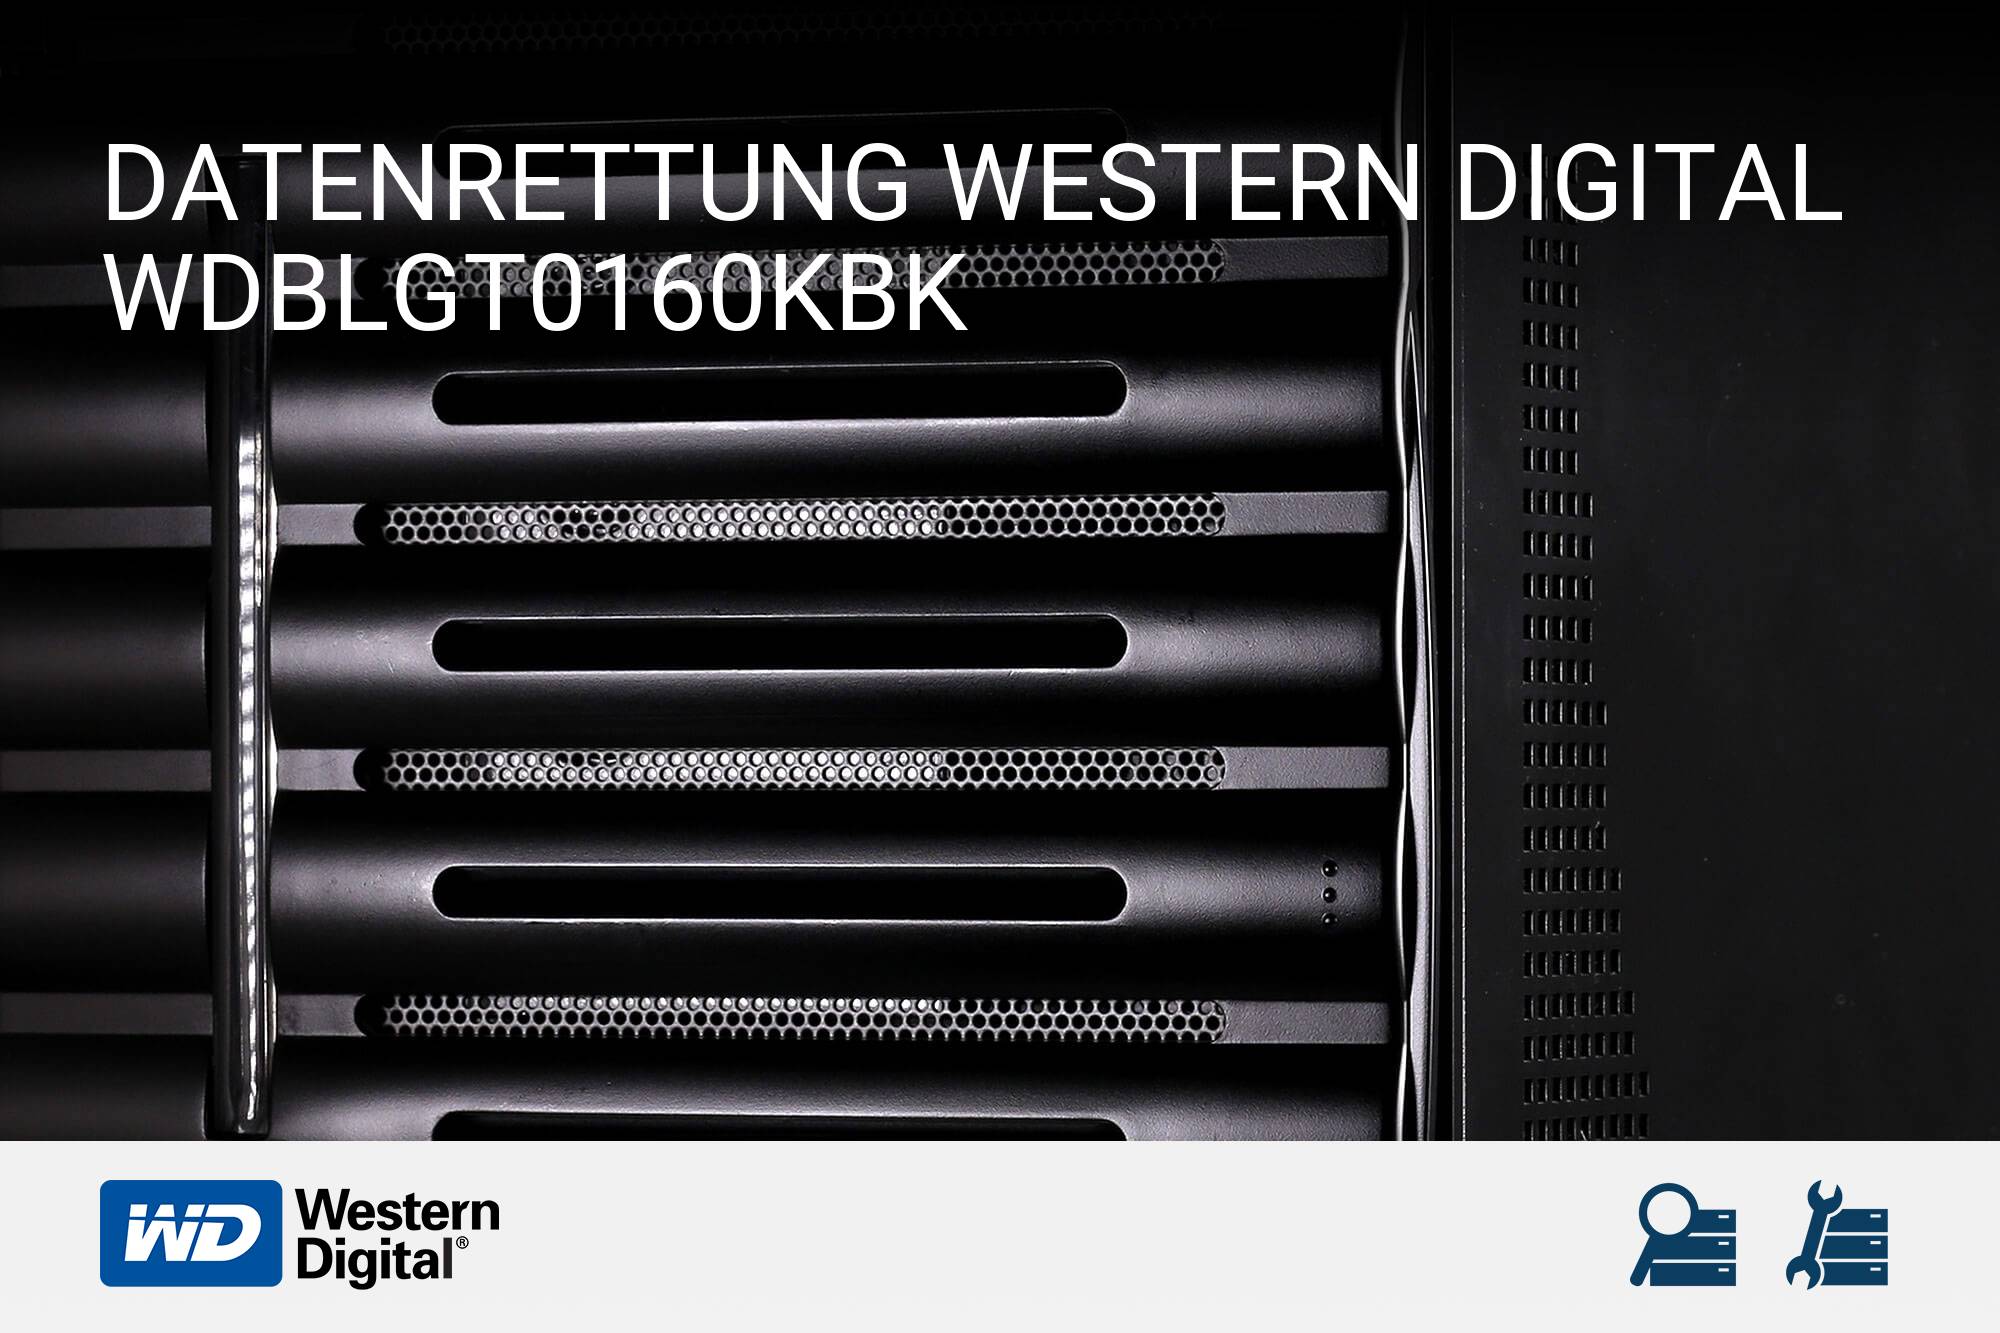 Western Digital WDBLGT0160KBK